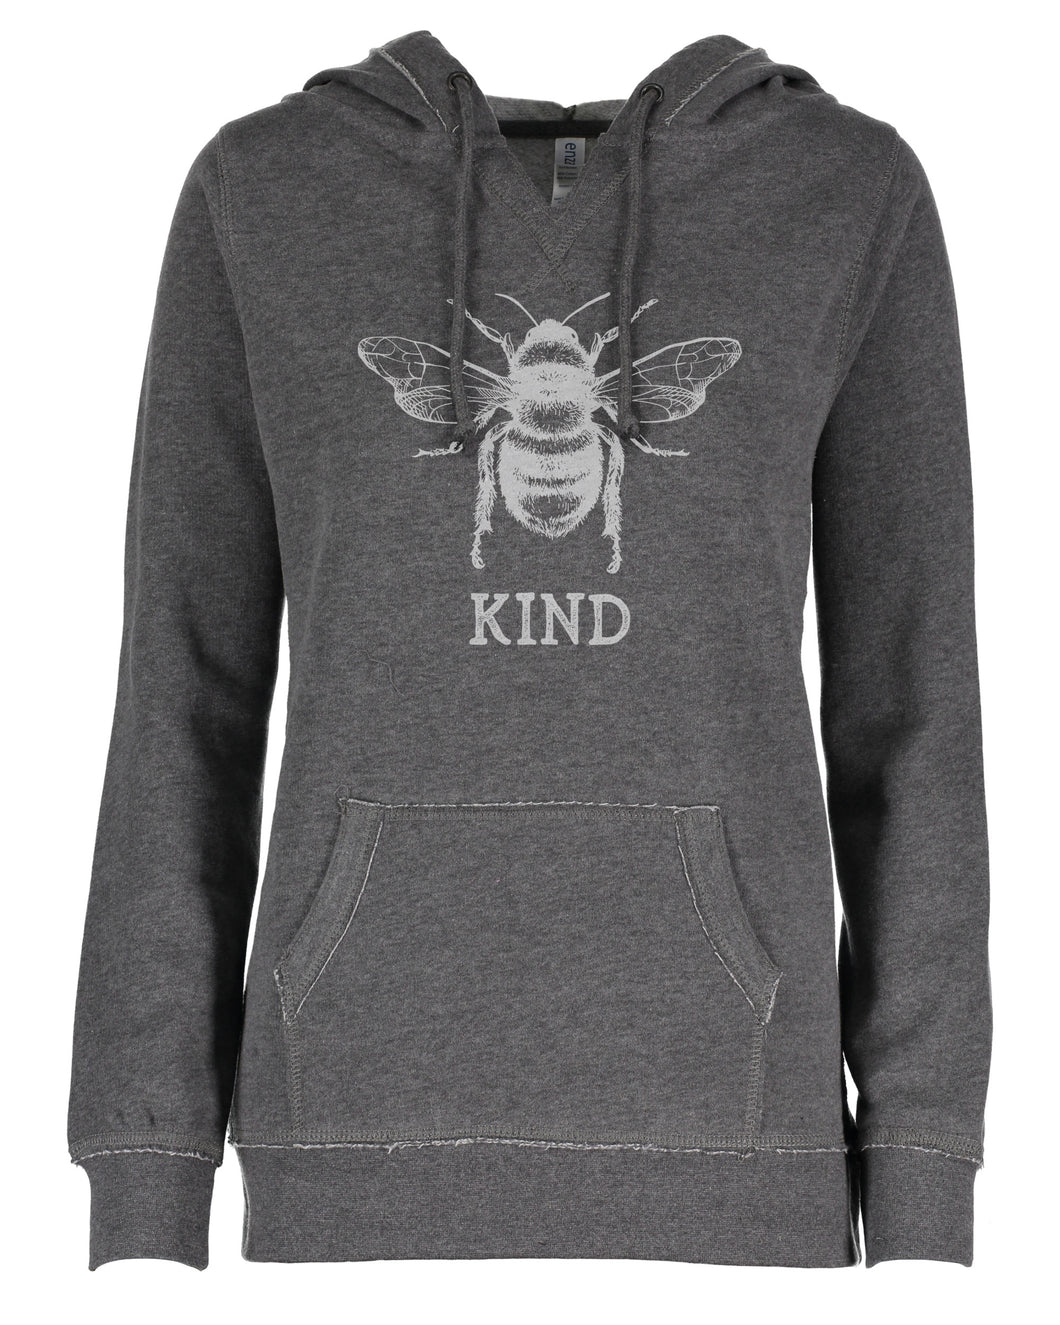 Bee Kind Ladies Hoodie Sweatshirt- Starter Set of 10